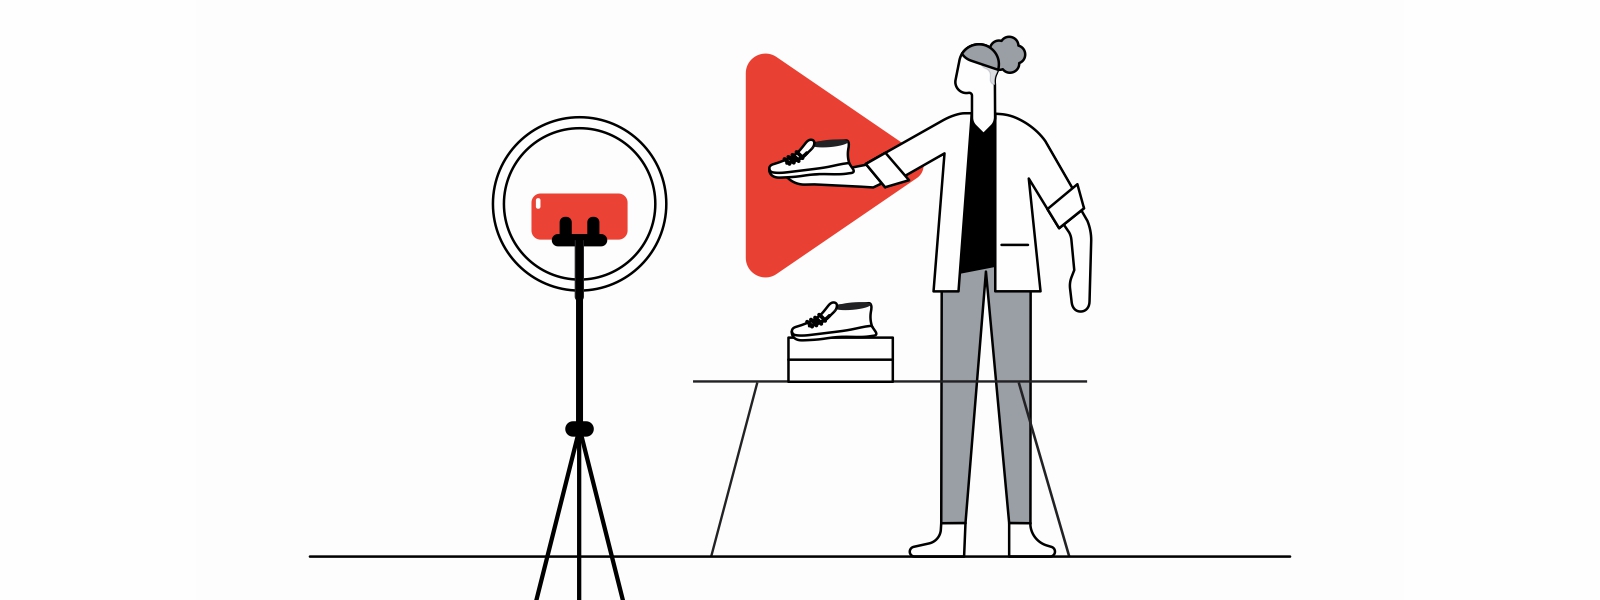 Una mujer con pelo enrulado y saco blanco muestra a la cámara un par de zapatos. Detrás de eso, el logo de YouTube en rojo. A la izquierda, un trípode con un teléfono móvil apuntando al zapato.